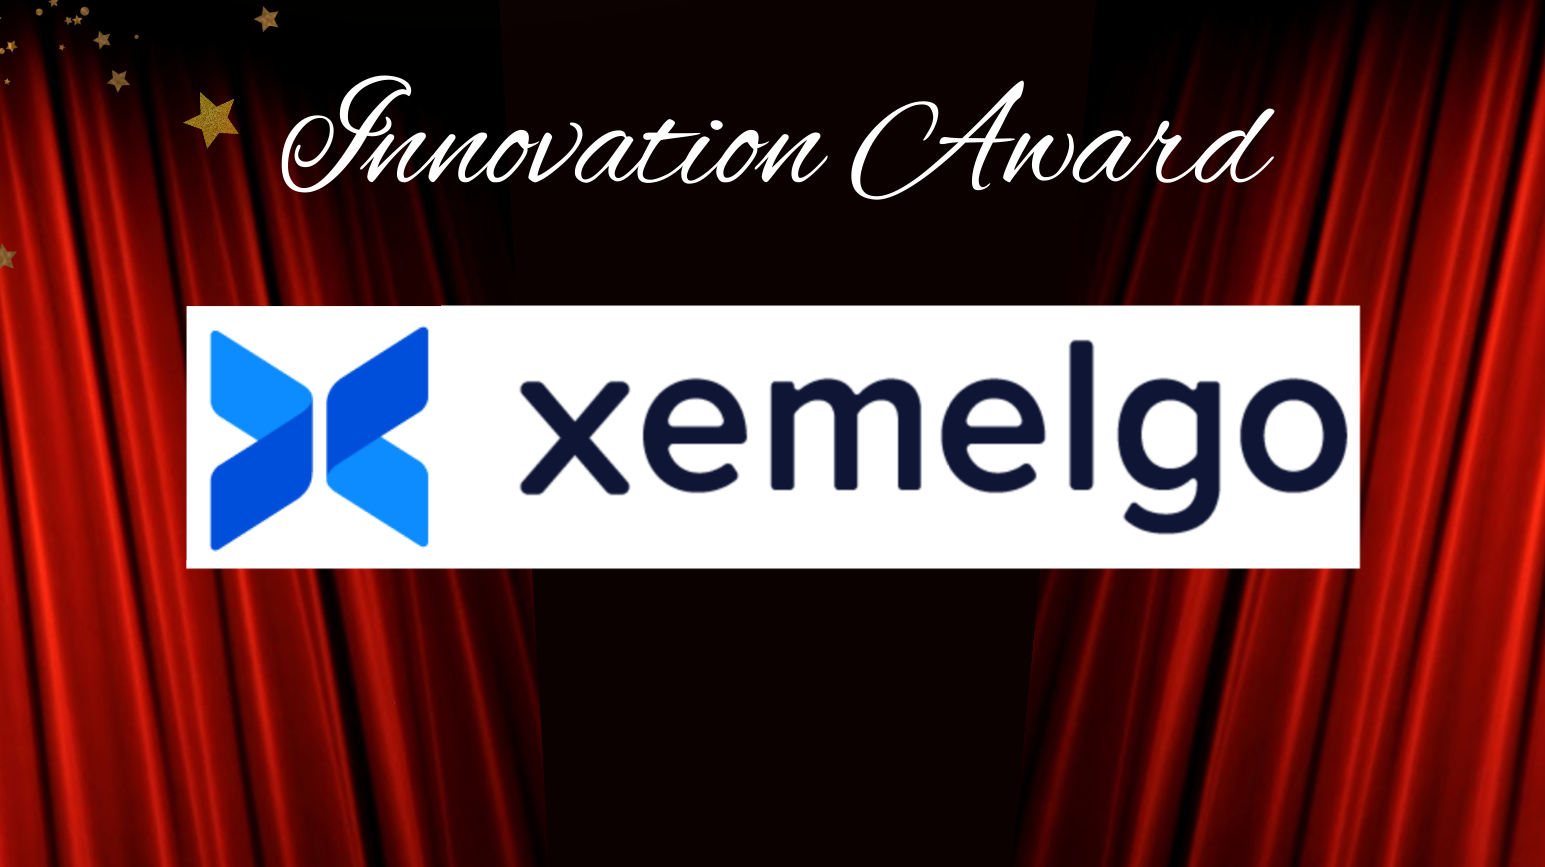 Innovation Award Winner - Xemelgo2